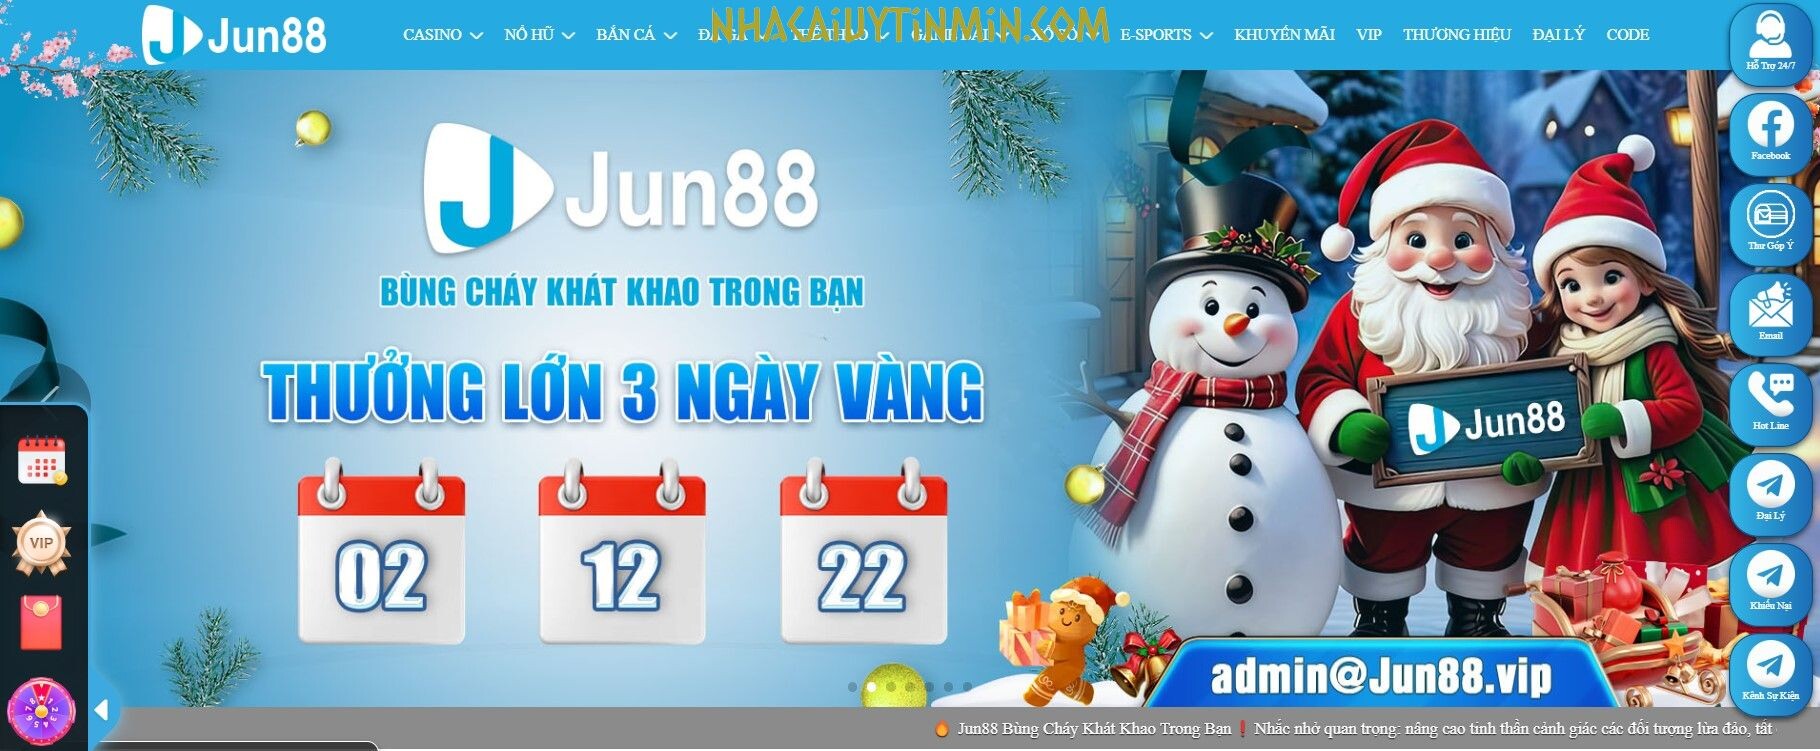 Jun88 được đánh giá là một thương hiệu nhà cái cá cược đá gà trực tuyến chất lượng hàng đầu tại Việt Nam